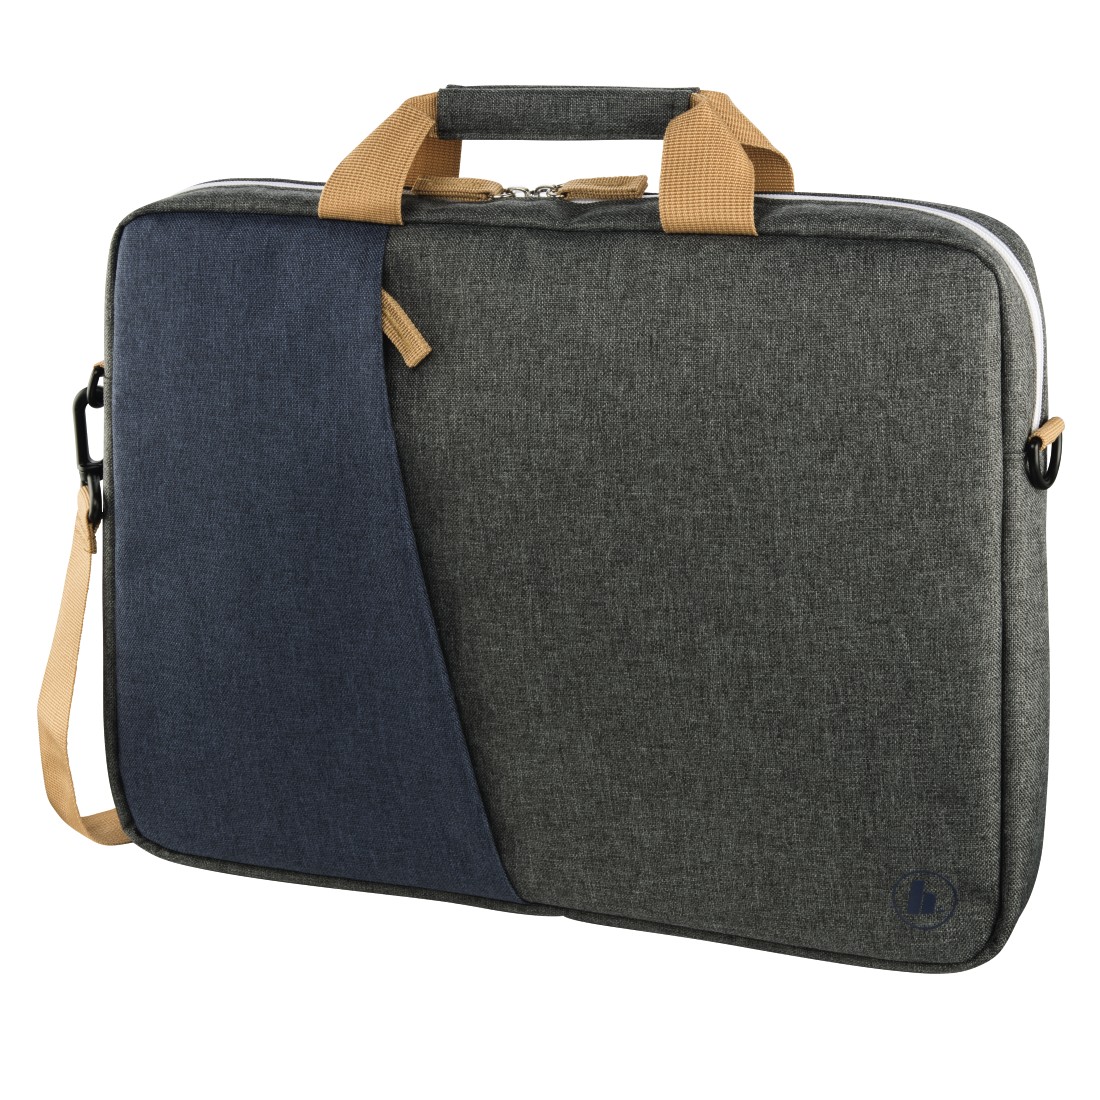 00185609 Hama "Florence" Notebook Bag, up to 34 cm (13.3"), marine blue /  dark grey | hama.com